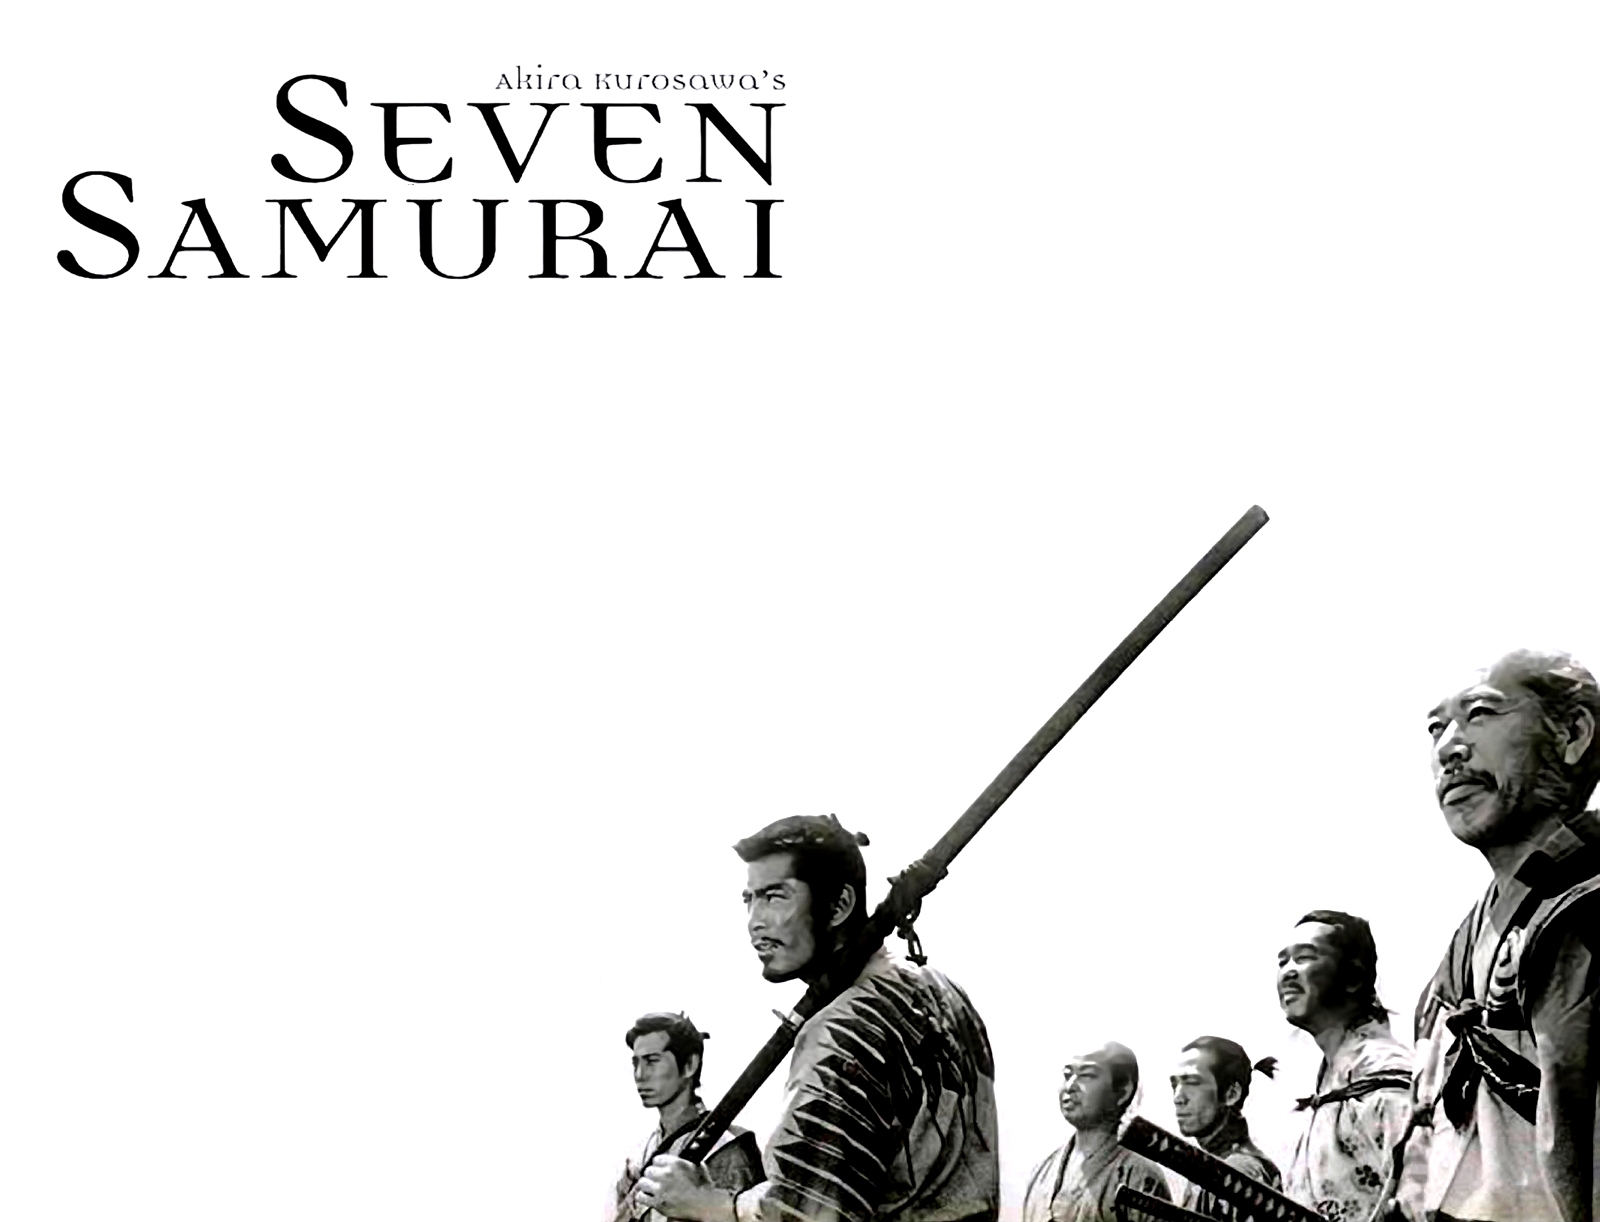 Seven Samurai Wallpaper For